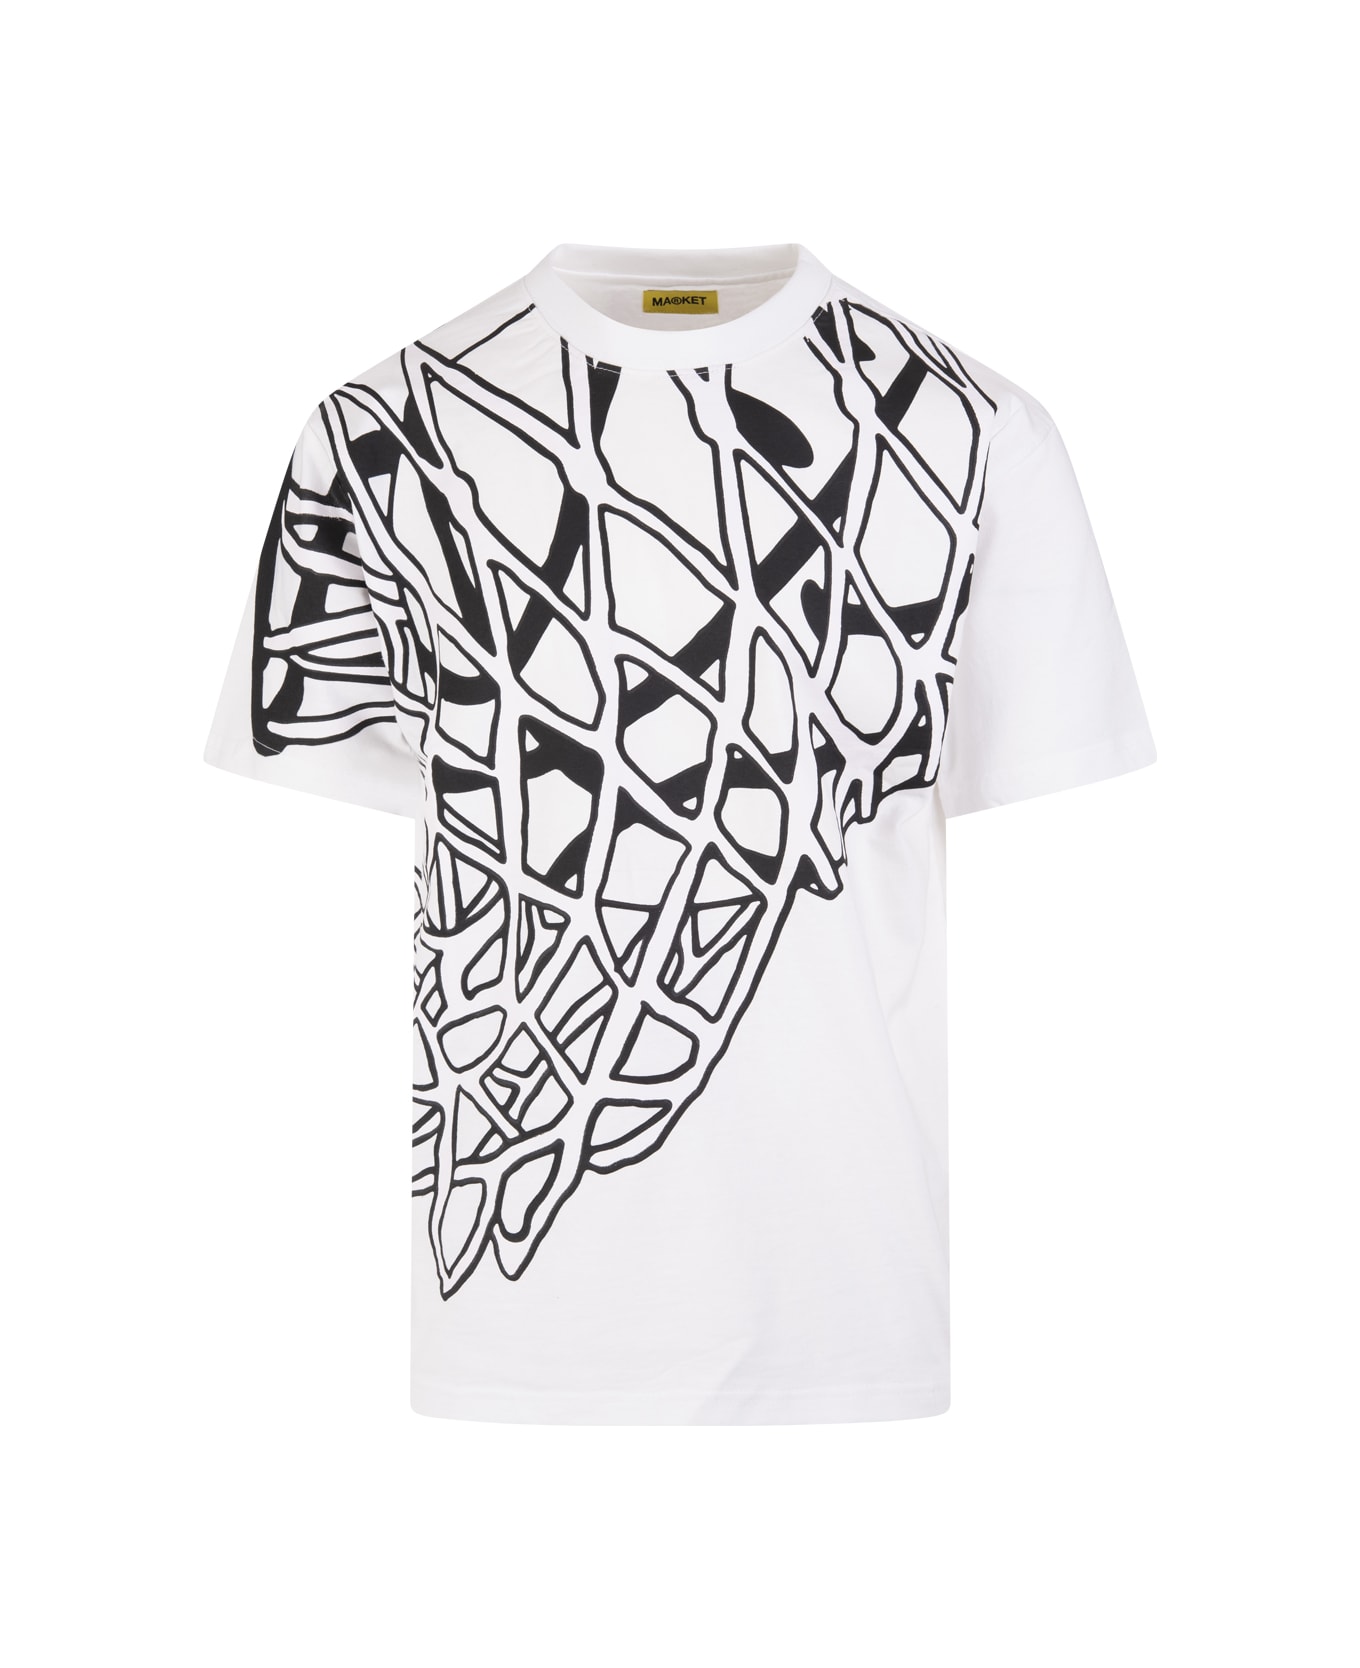 Market Unisex White Smiley In The Net Uv T-shirt - WHITE